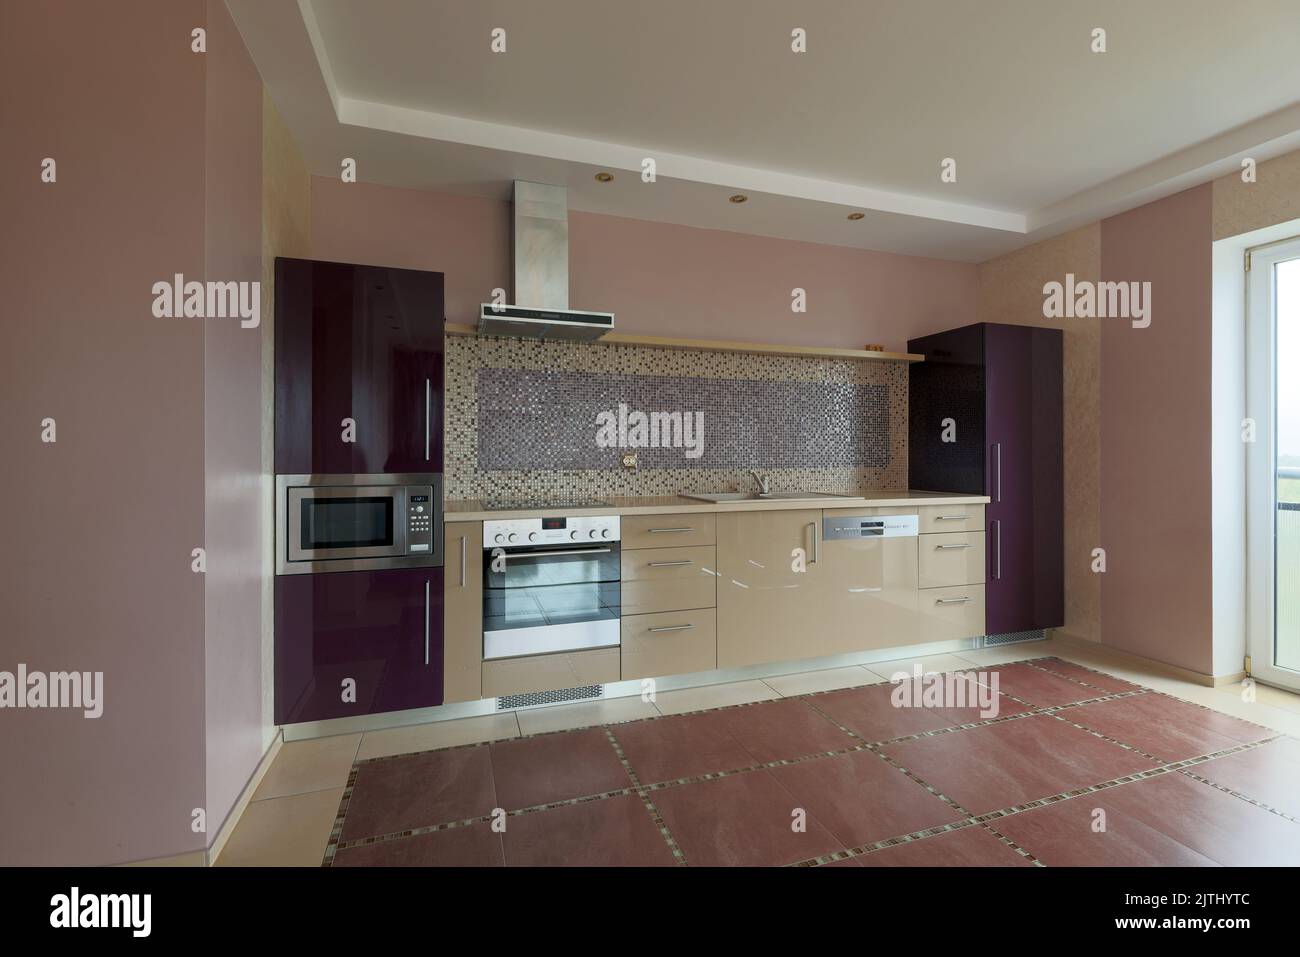 vista interior de muebles de cocina doméstica beige y púrpura con electrodomésticos Foto de stock